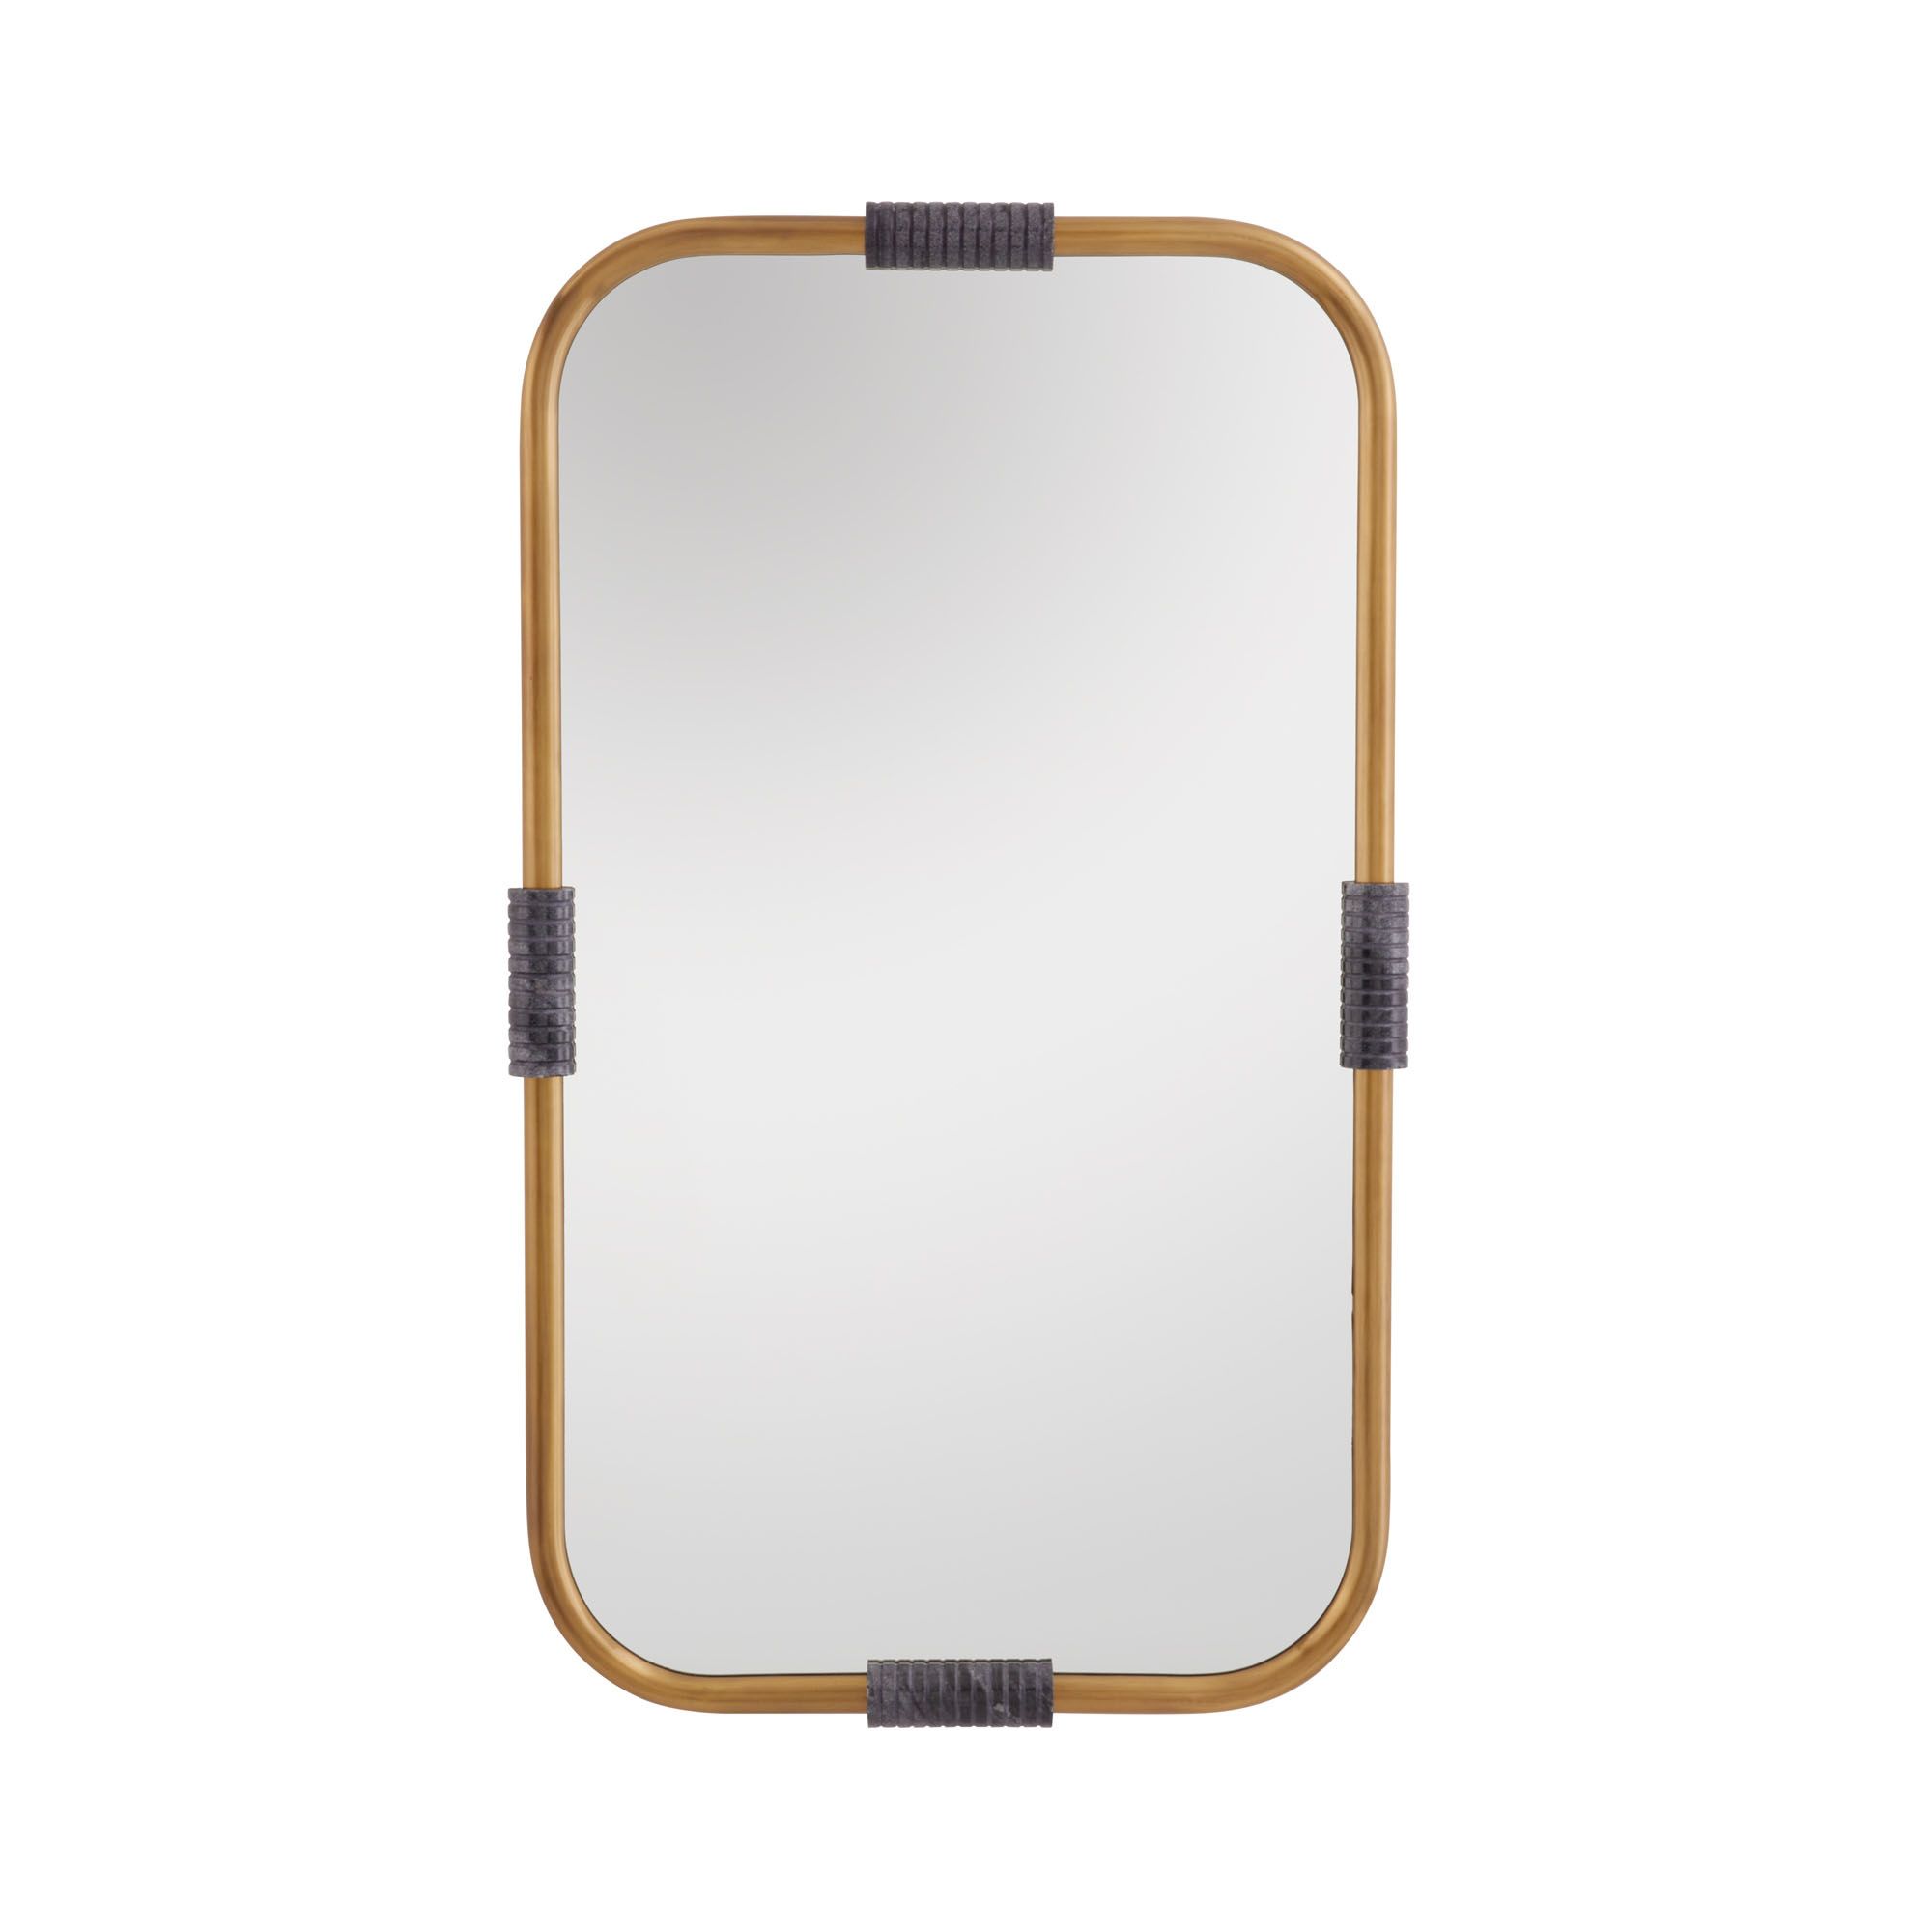 Купить Настенное зеркало Major Mirror в интернет-магазине roooms.ru